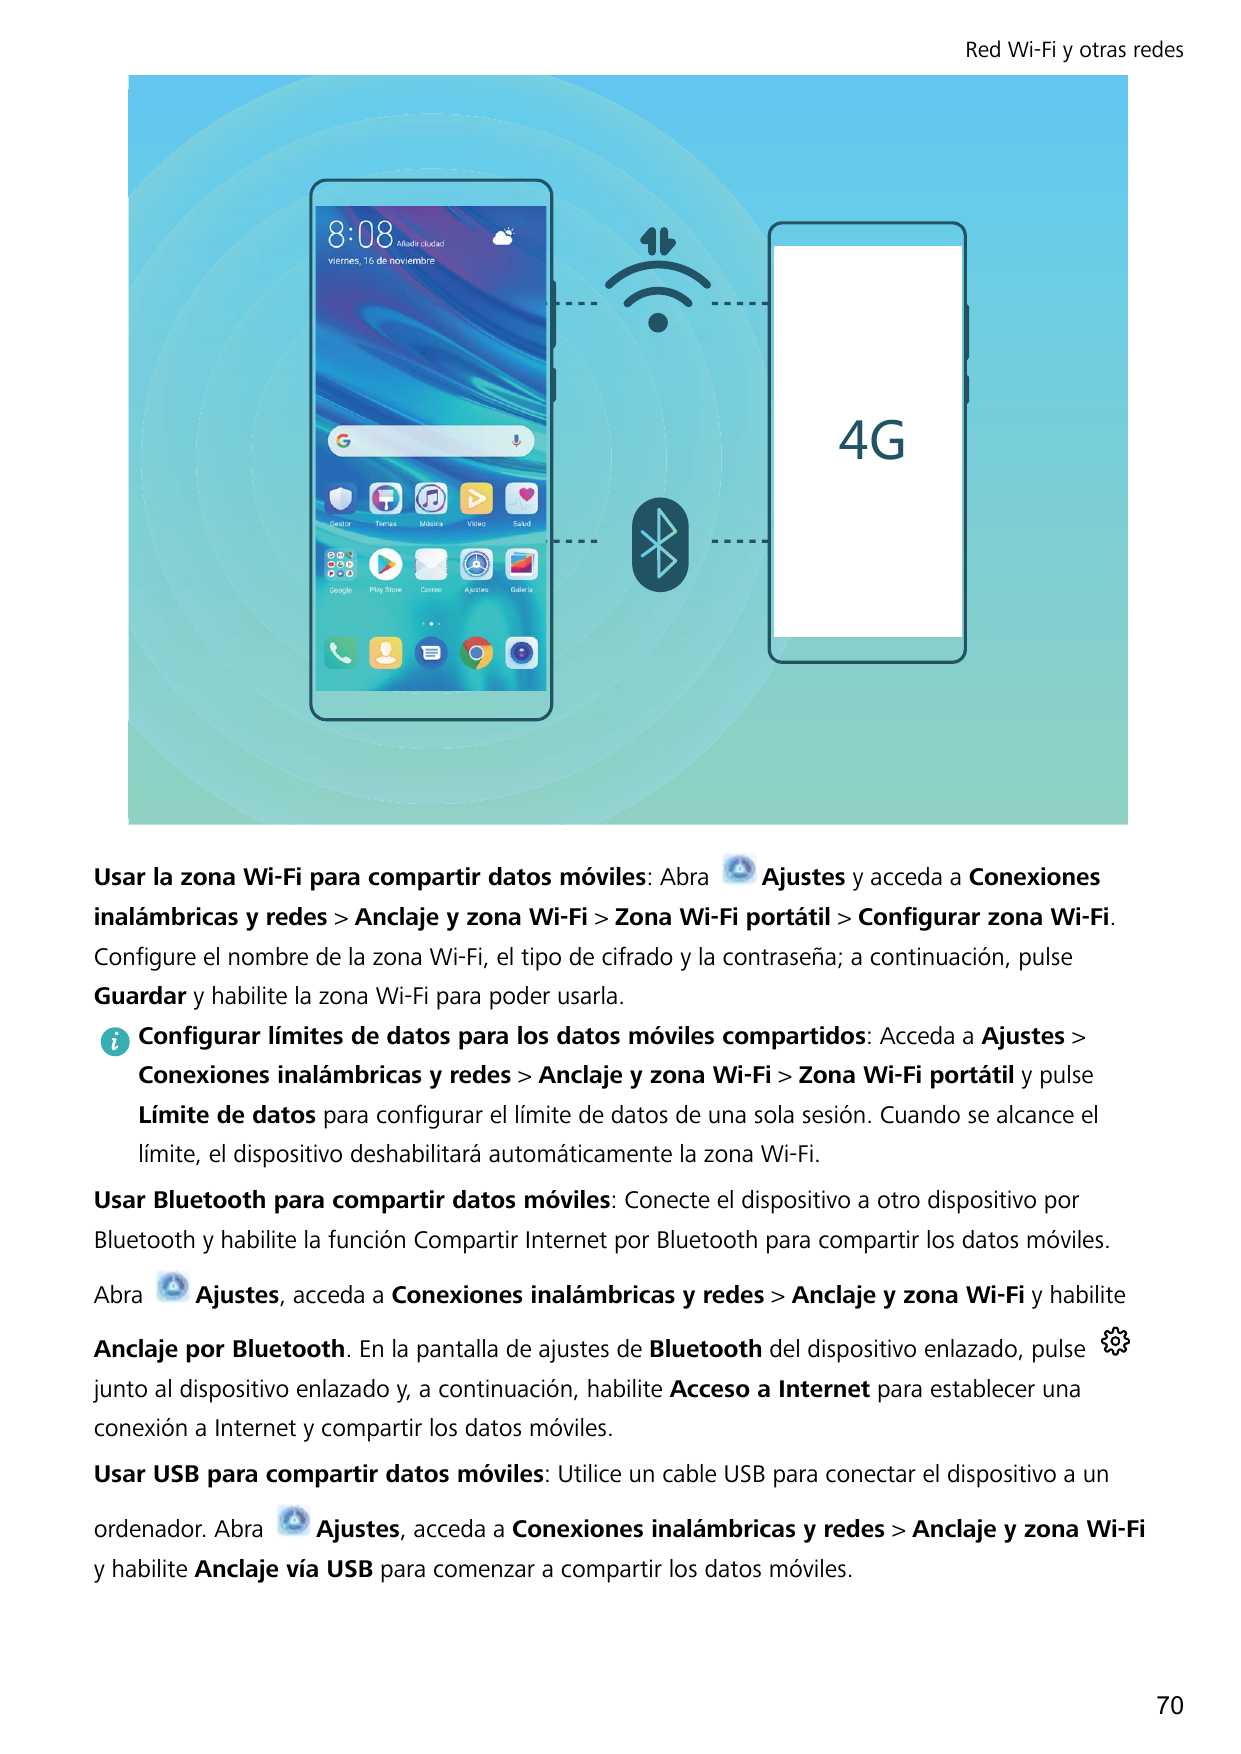 Red Wi-Fi y otras redes-Usar la zona Wi-Fi para compartir datos móviles: AbraAjustes y acceda a Conexionesinalámbricas y redes >